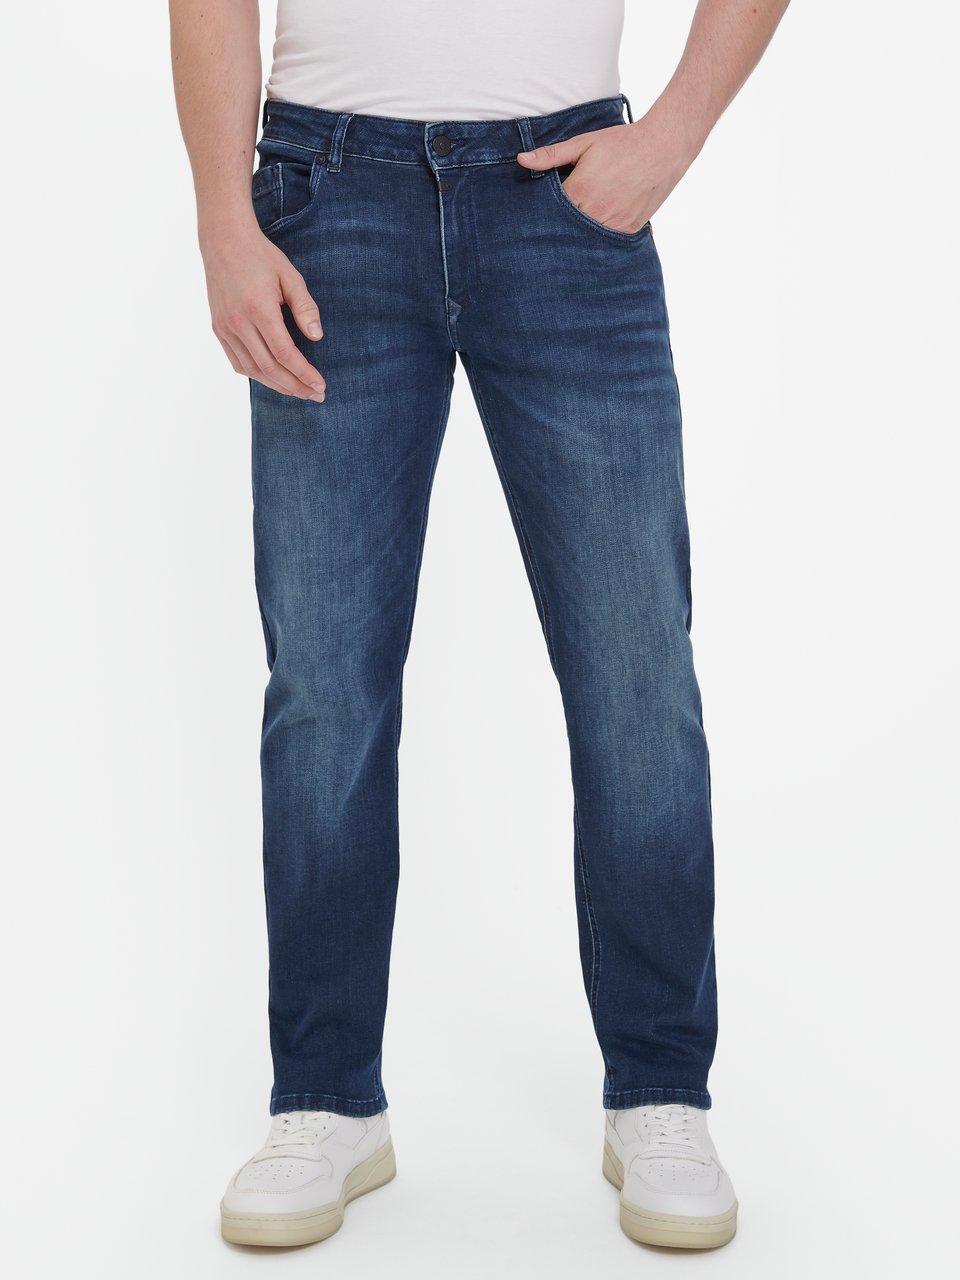 Timezone - Le jean, longueur inch 32